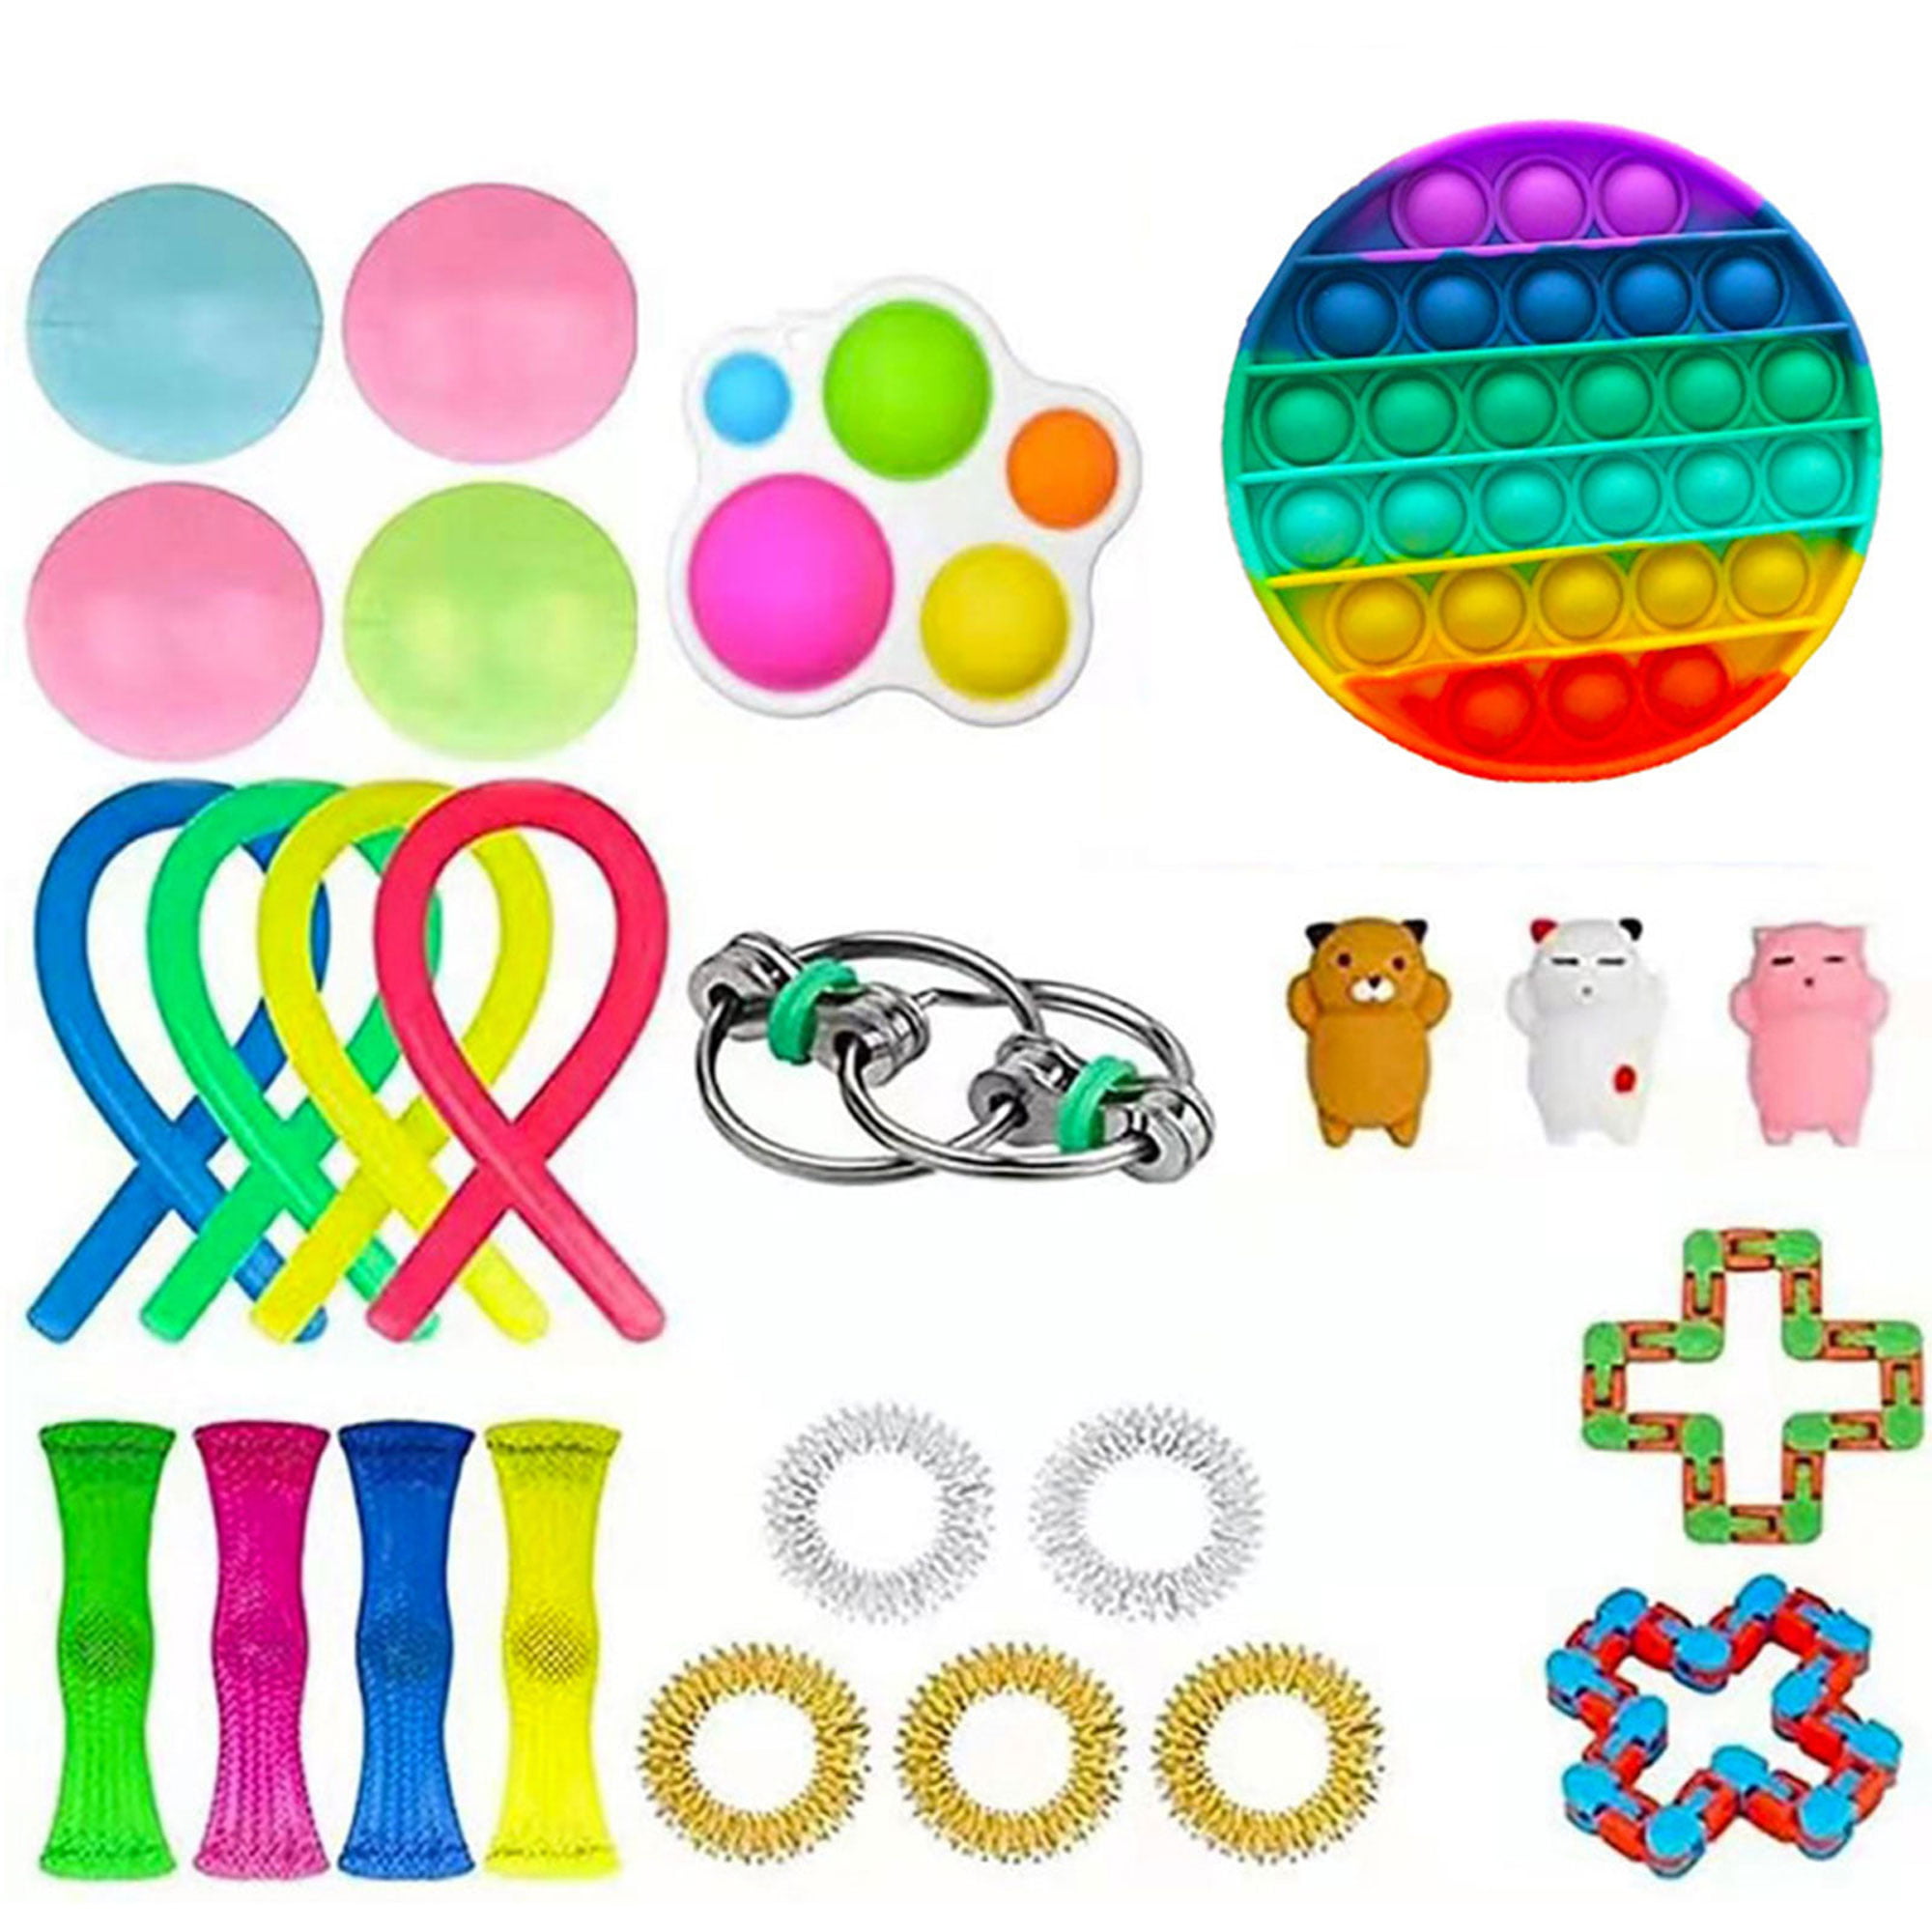 Details about   1-25Pcs Fidget Sensory Toys Set Bundle Stress Relief Hand Game Toys Kids Adults 